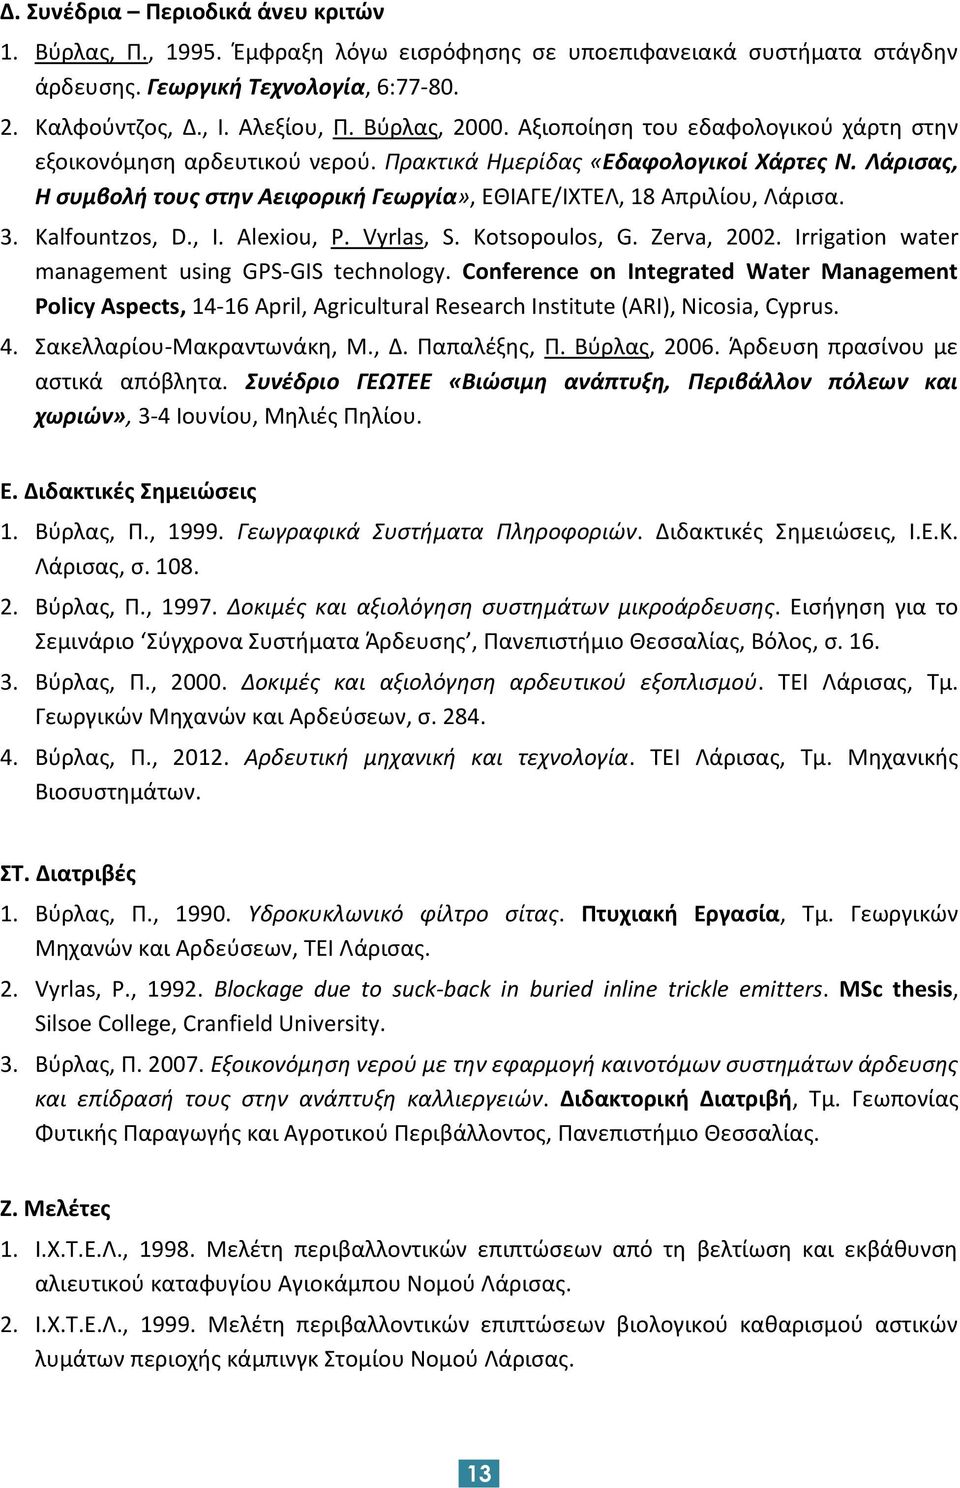 Λάρισας, Η συμβολή τους στην Αειφορική Γεωργία», ΕΘΙΑΓΕ/ΙΧΤΕΛ, 18 Απριλίου, Λάρισα. 3. Kalfountzos, D., I. Alexiou, P. Vyrlas, S. Kotsopoulos, G. Zerva, 2002.